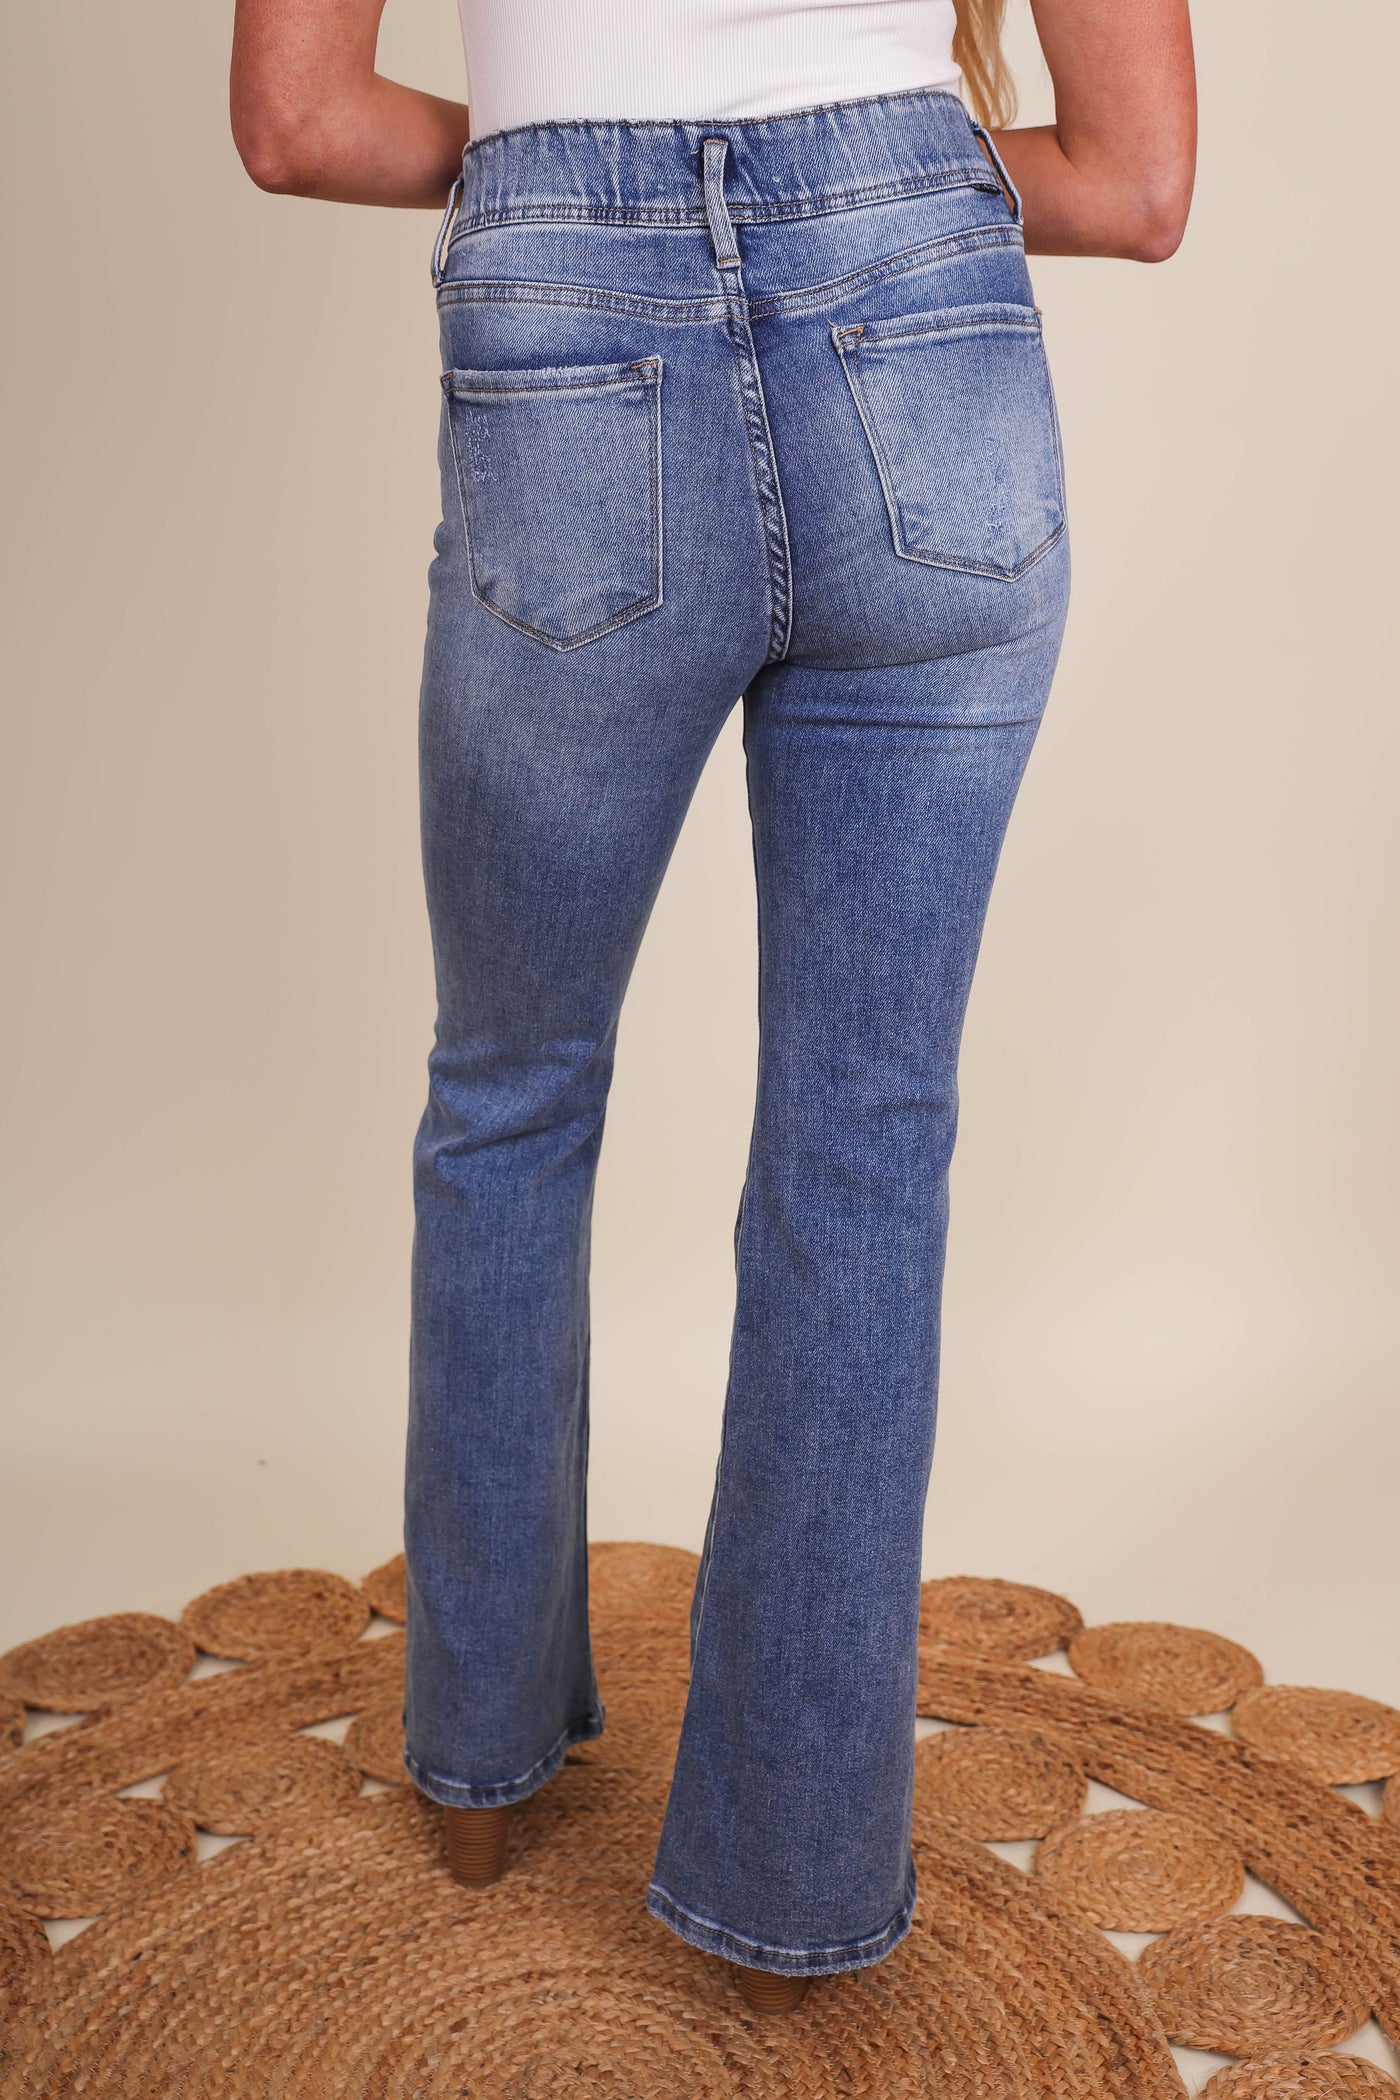 Women's Denim Flares- Women's Pull On Flares- Risen Jeans